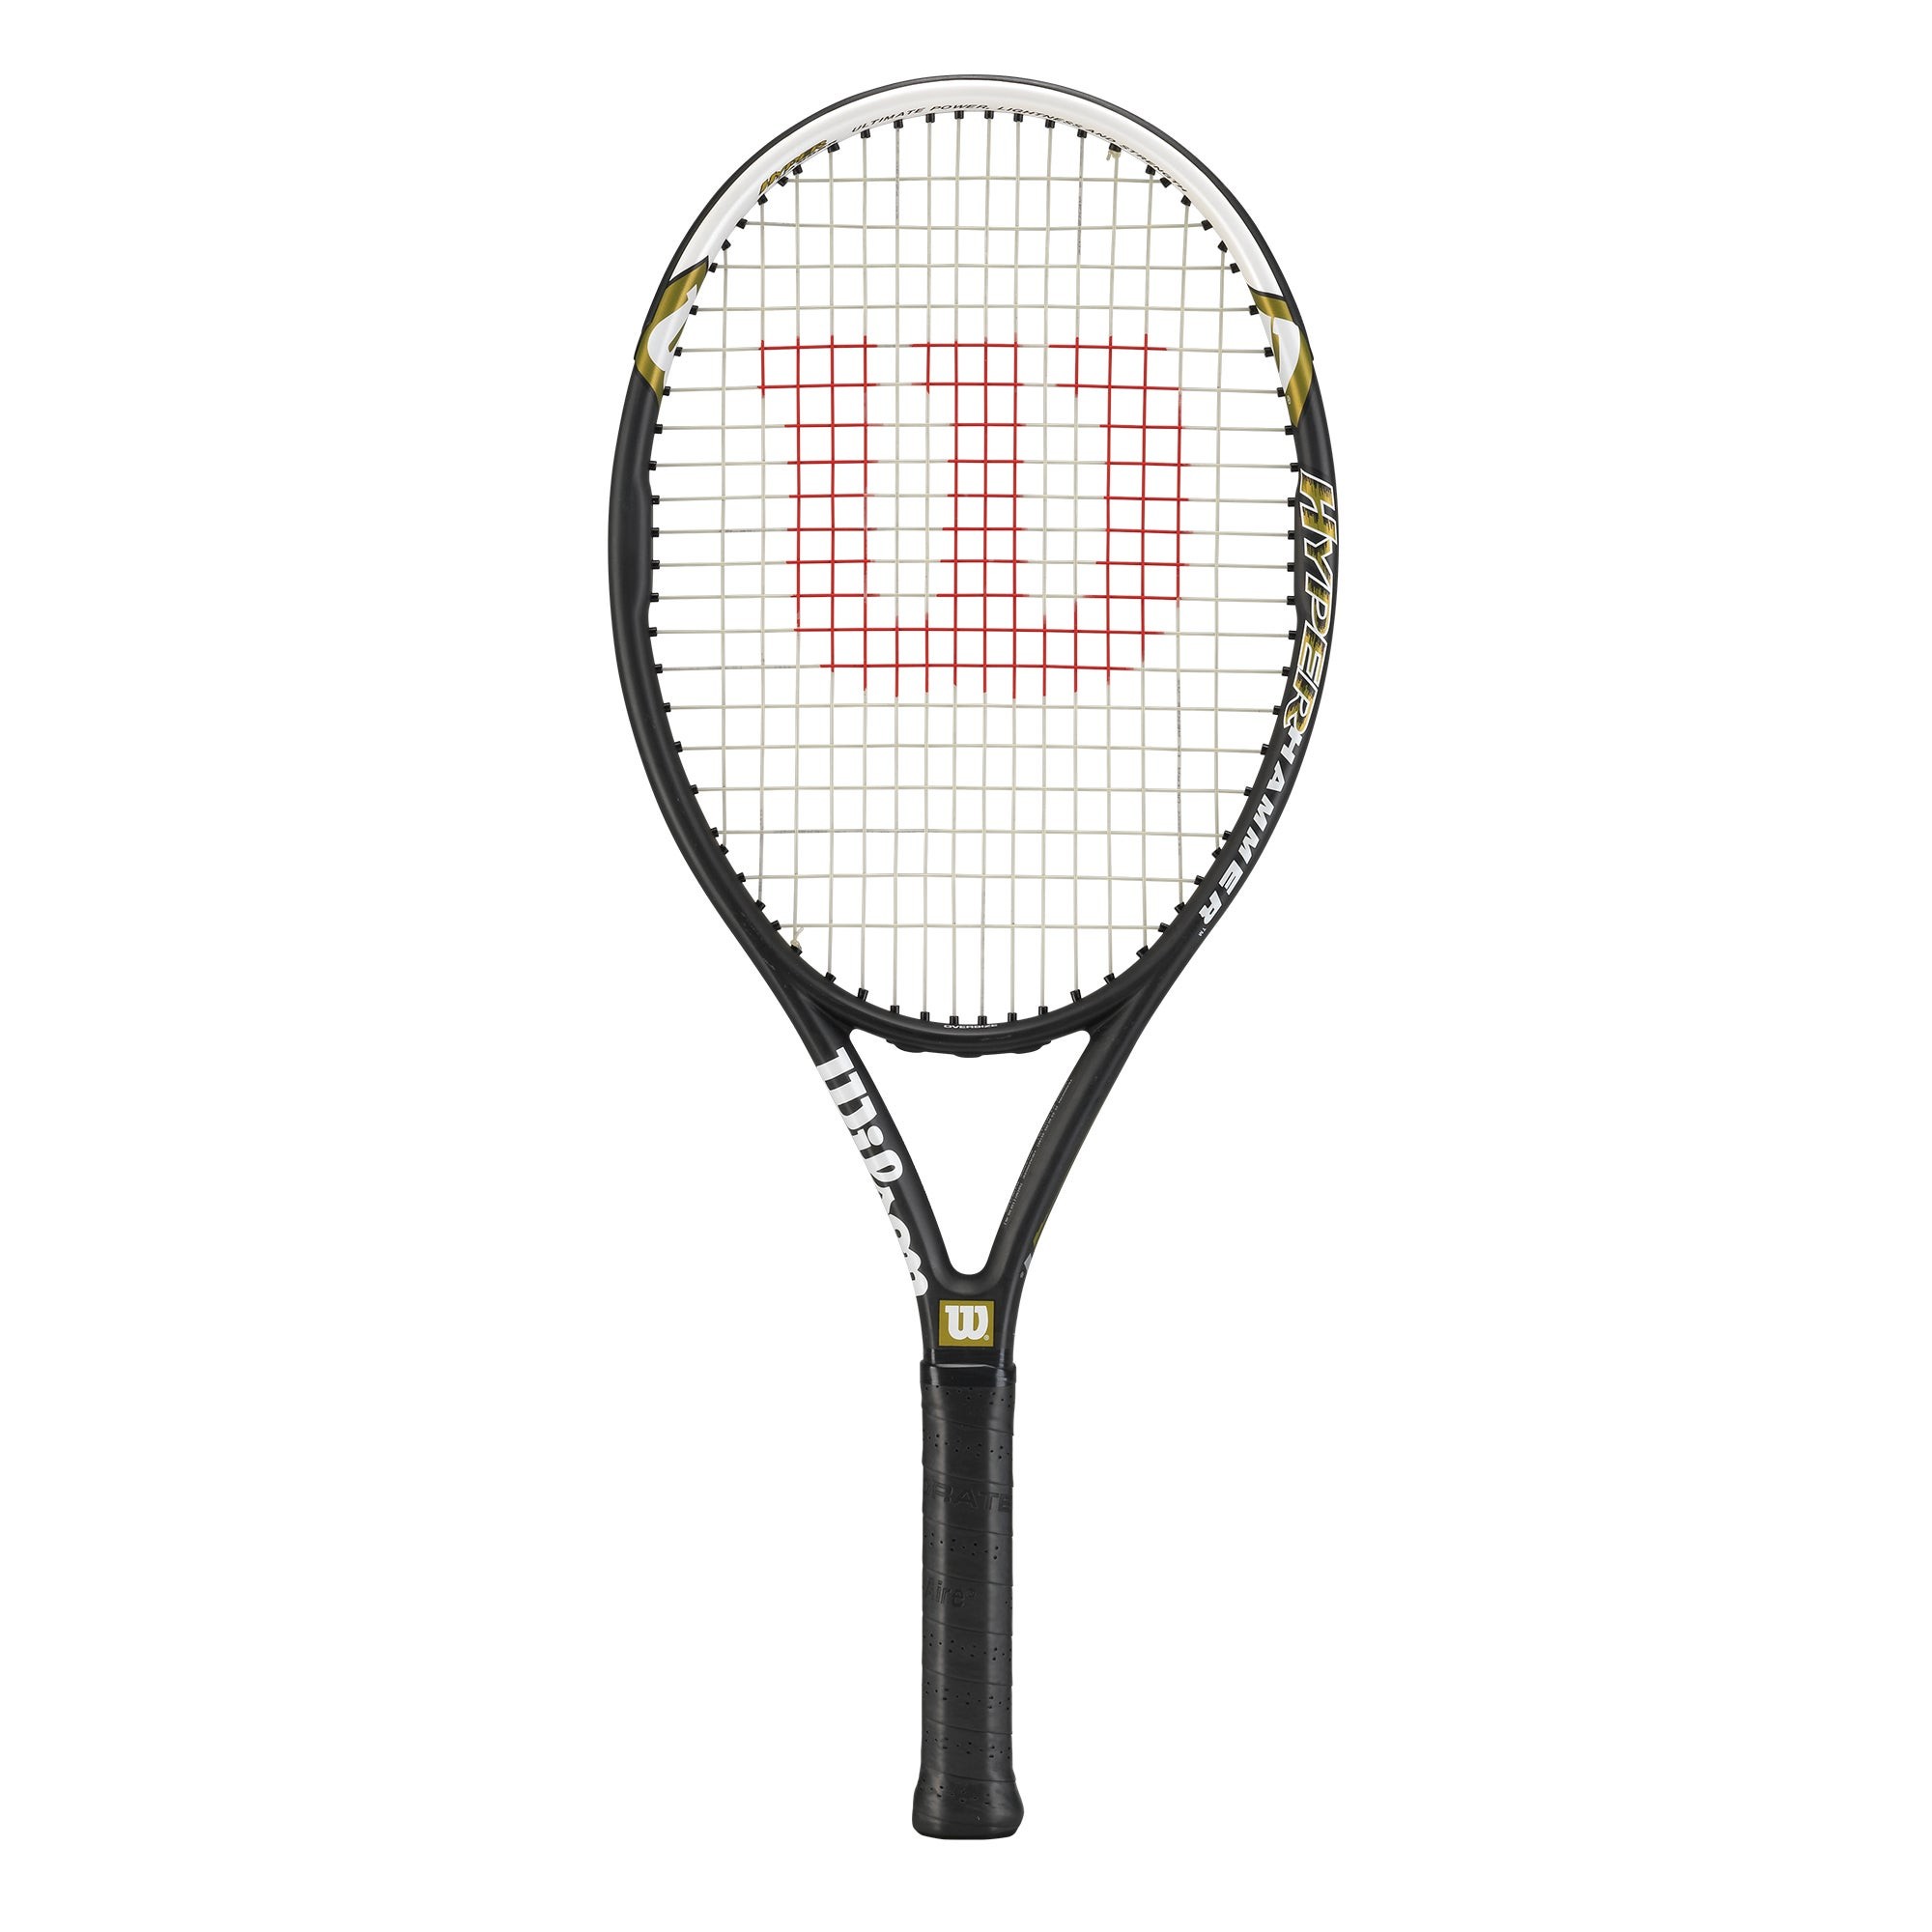 Hyper Hammer 5.3 Tennis Racket 4-3/8"